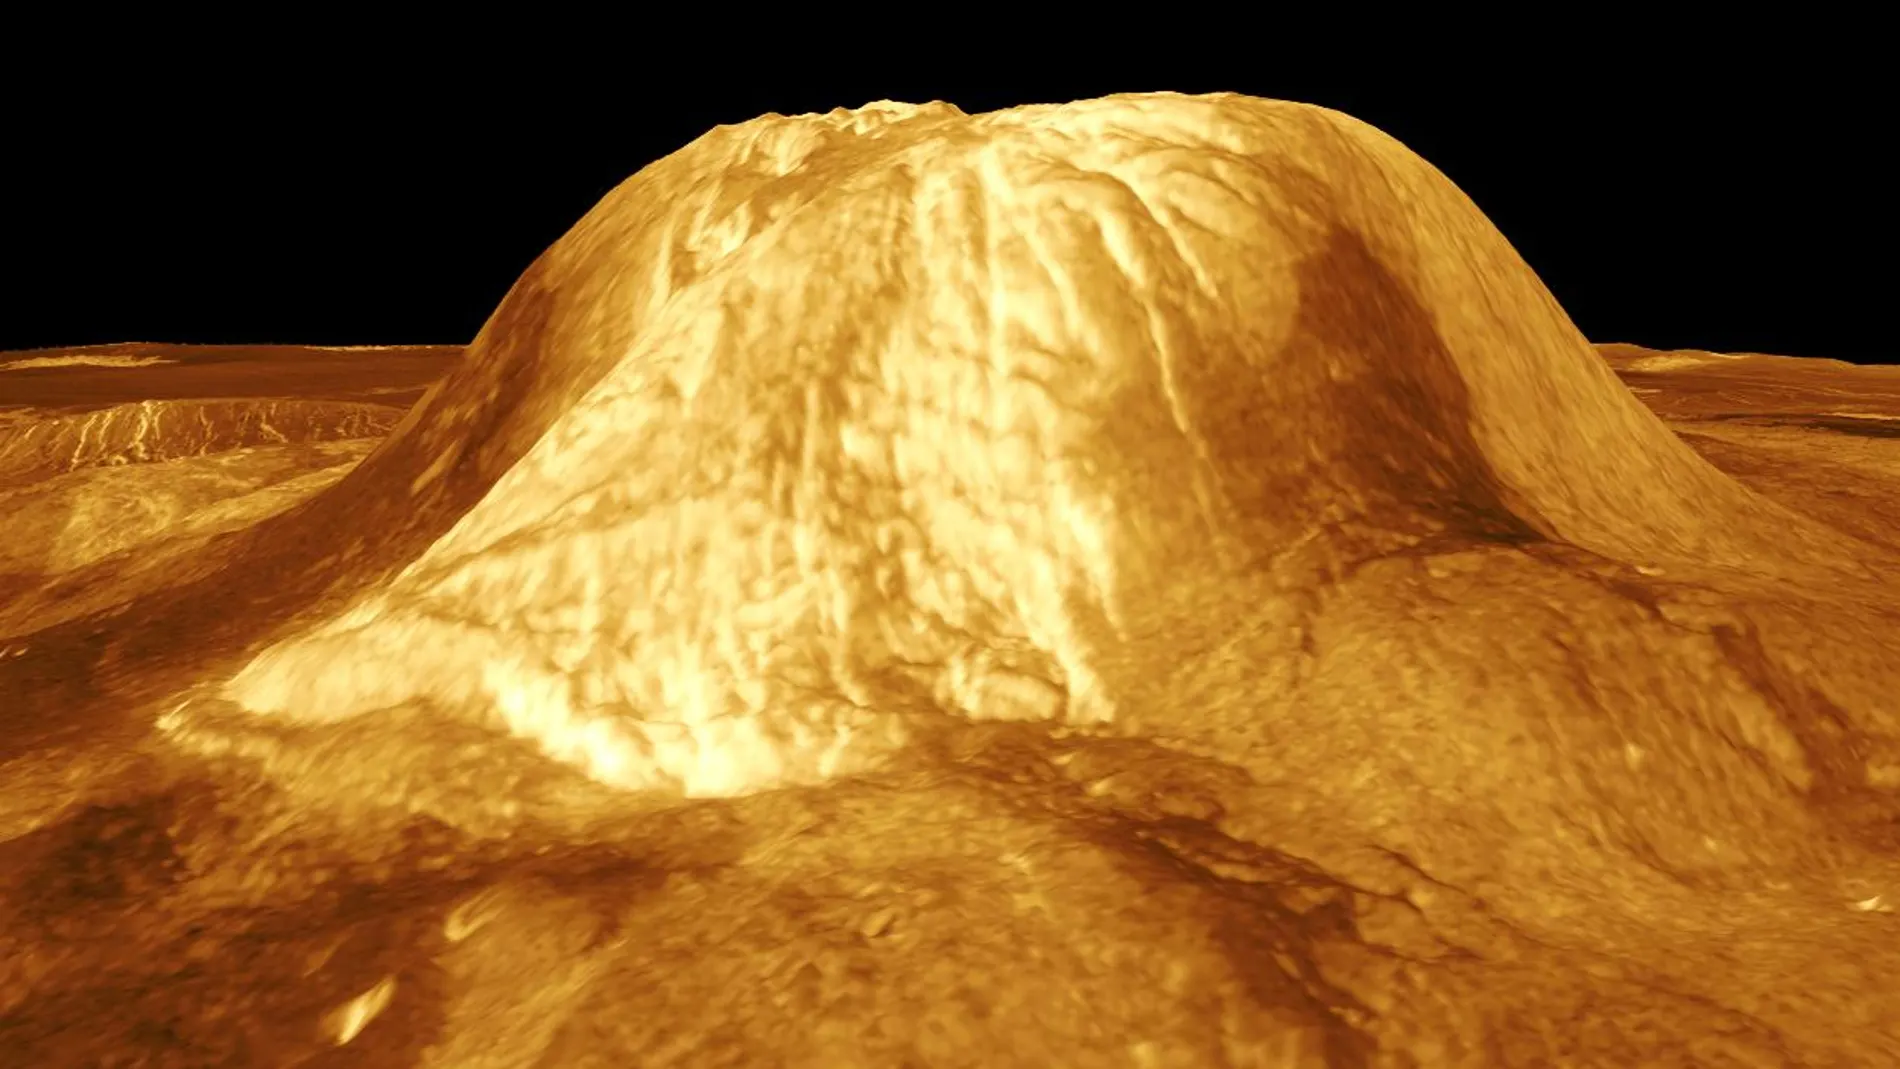 La cautela de los astrónomos: “No estamos afirmando que hayamos encontrado vida en Venus”